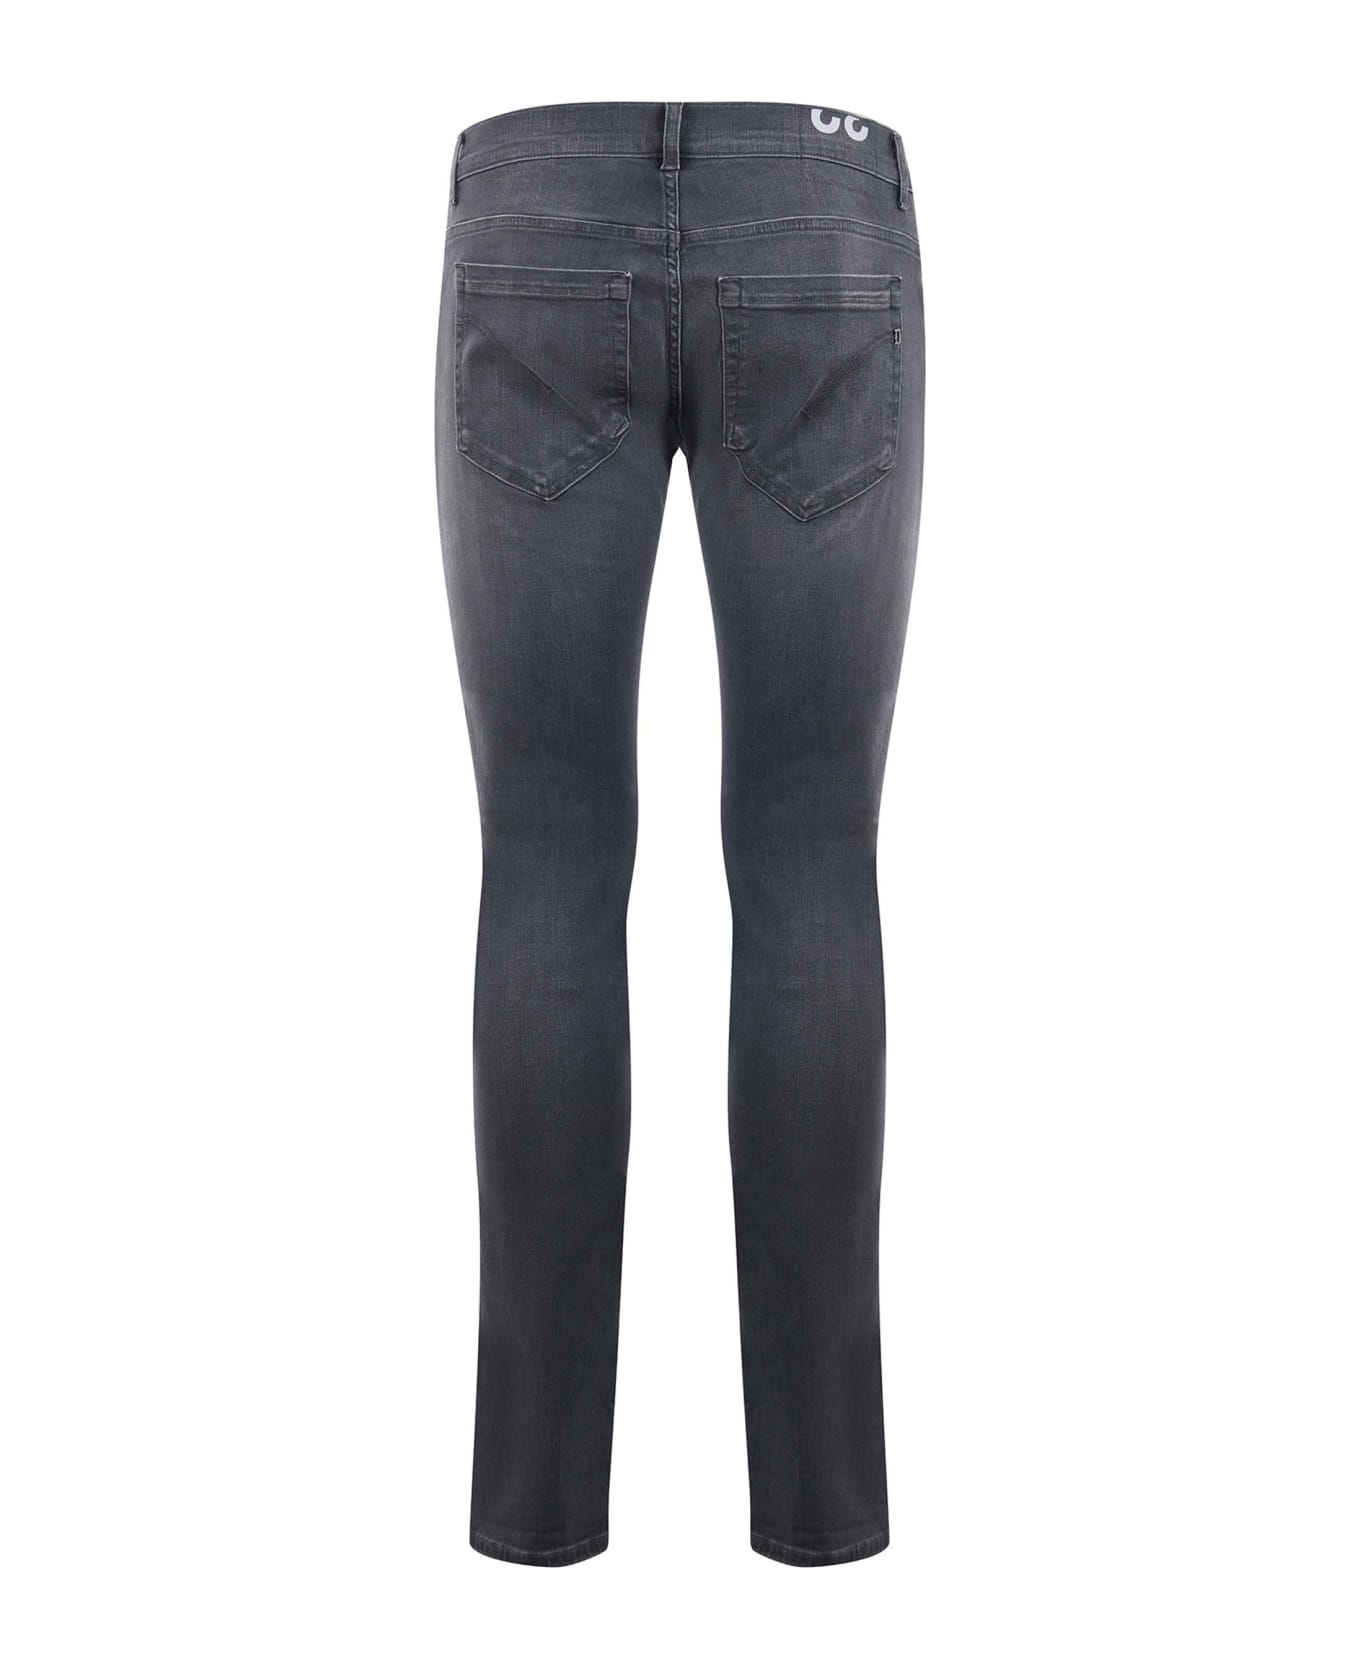 Dondup Pantalone George 5 Tasche Jeans - Denim grigio